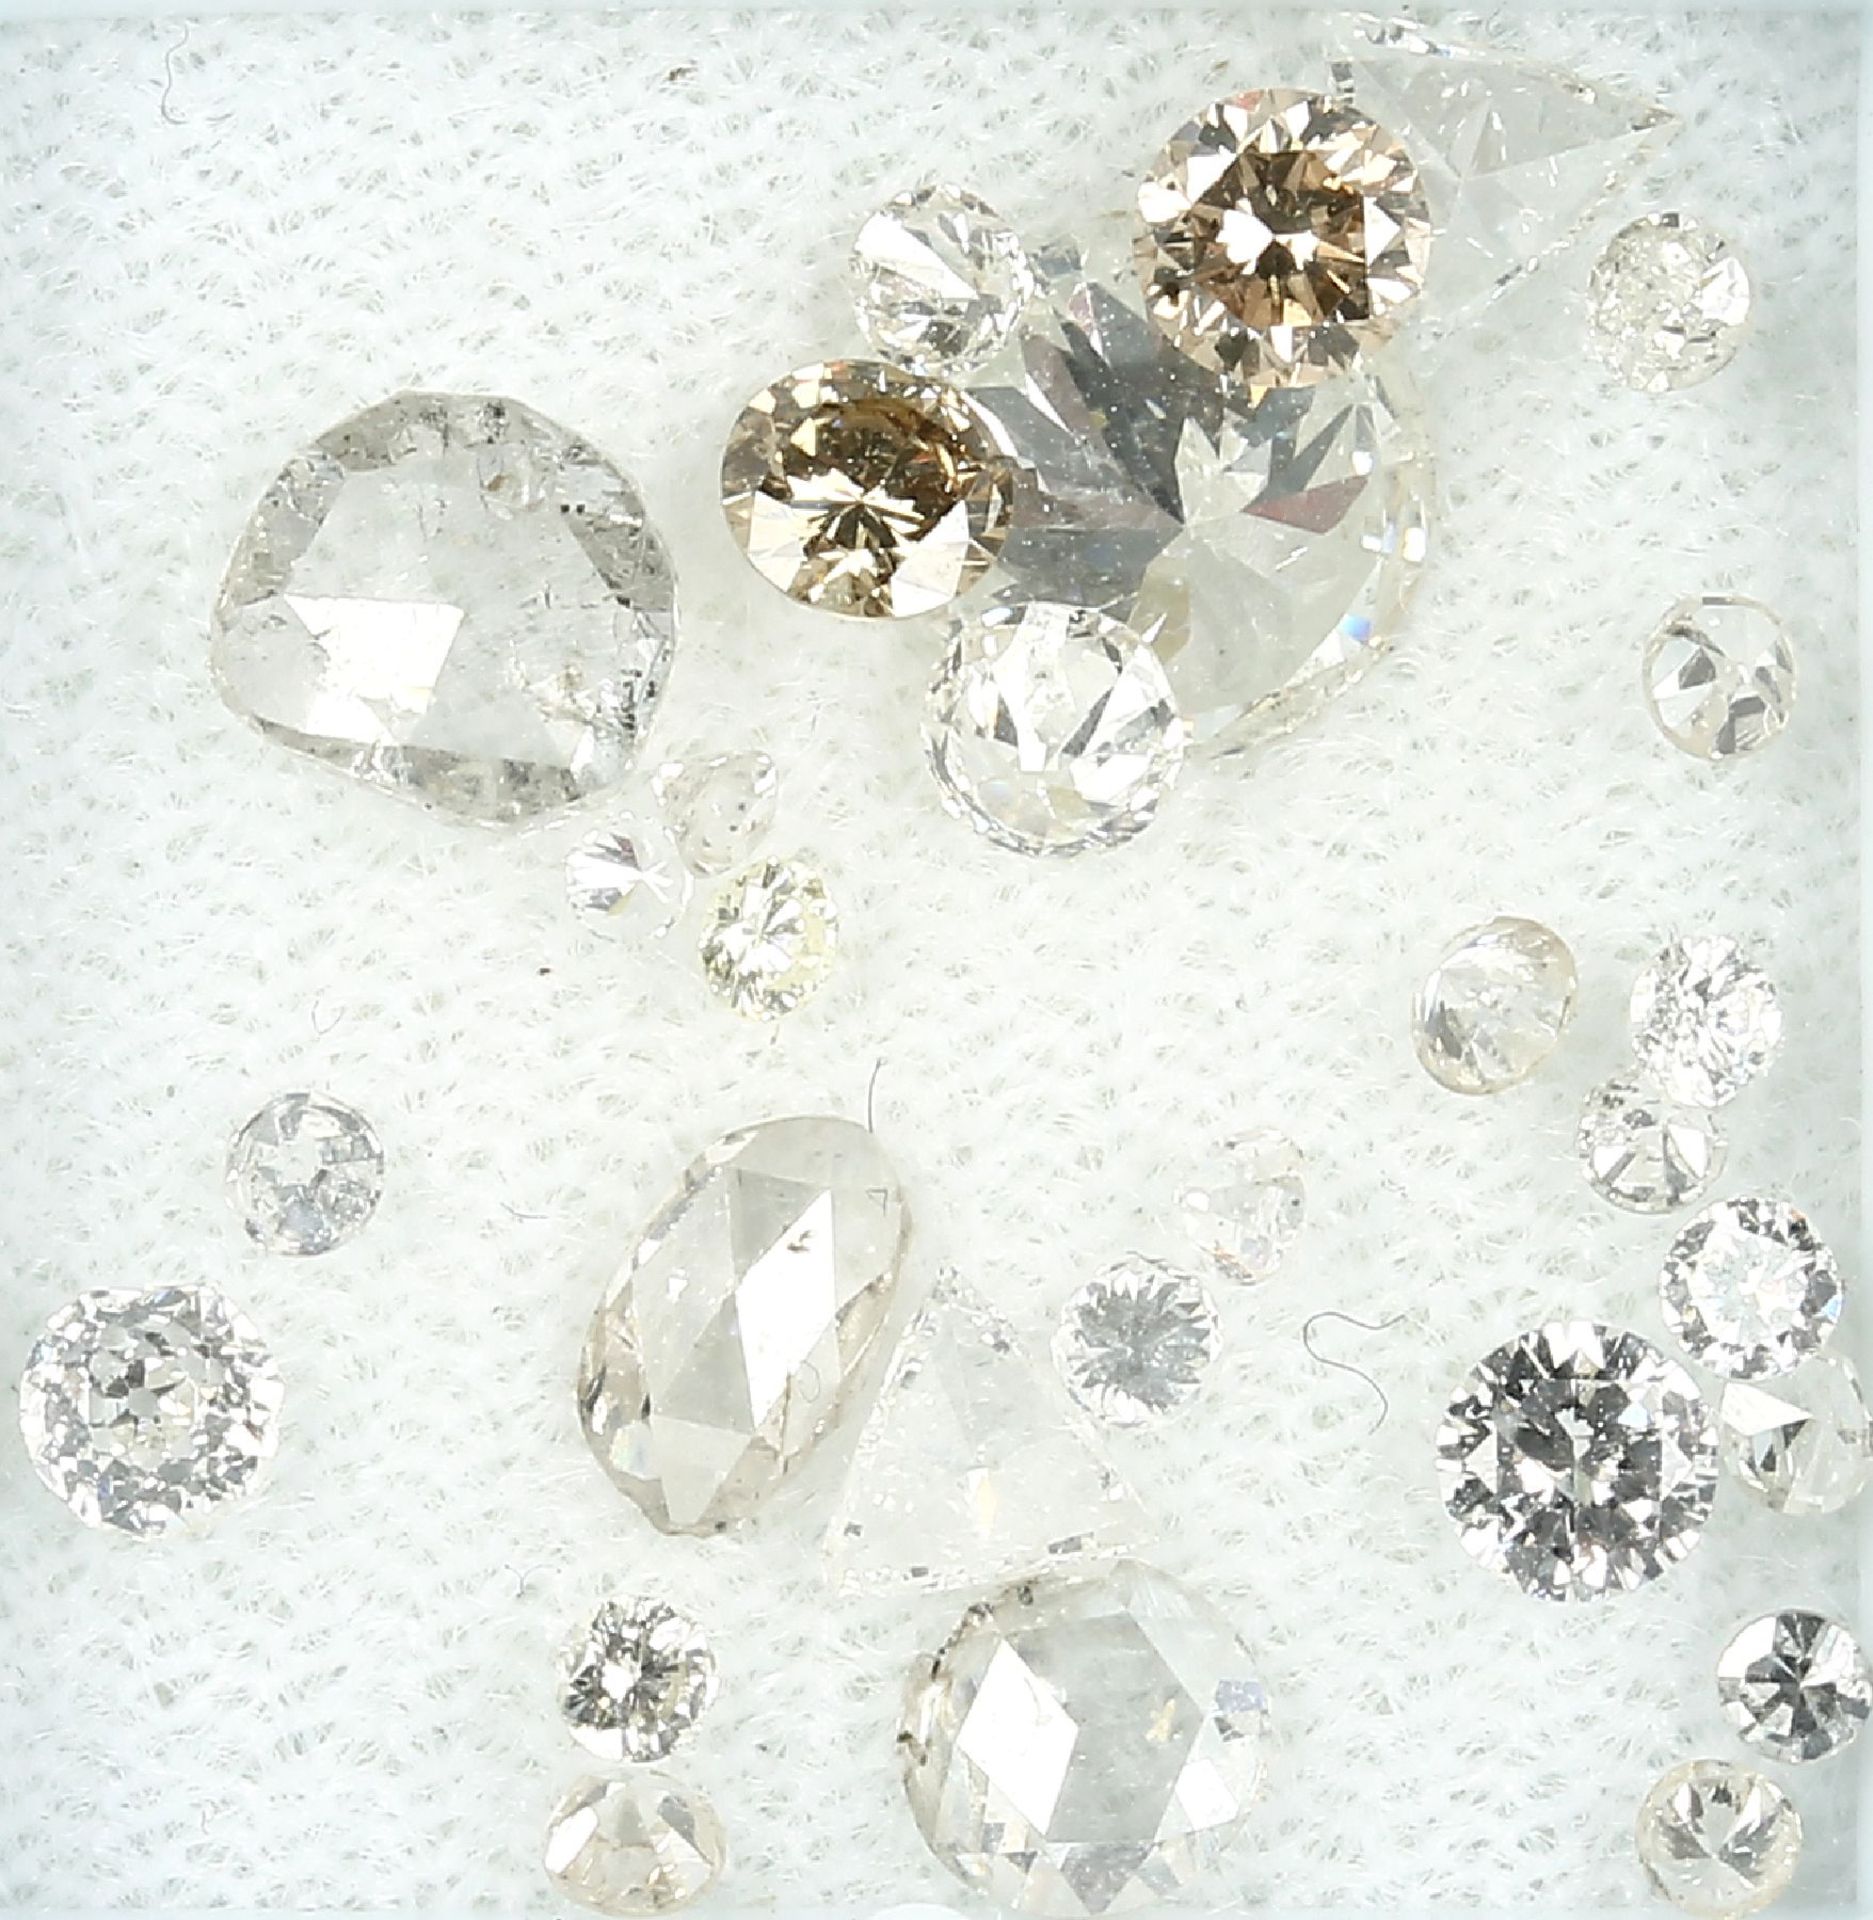 Lot lose Diamanten, zus. ca. 3.45 ct Weiß-l.get.Weiß-get.Weiß-Braun/si-p, versch. Größen und Formen,